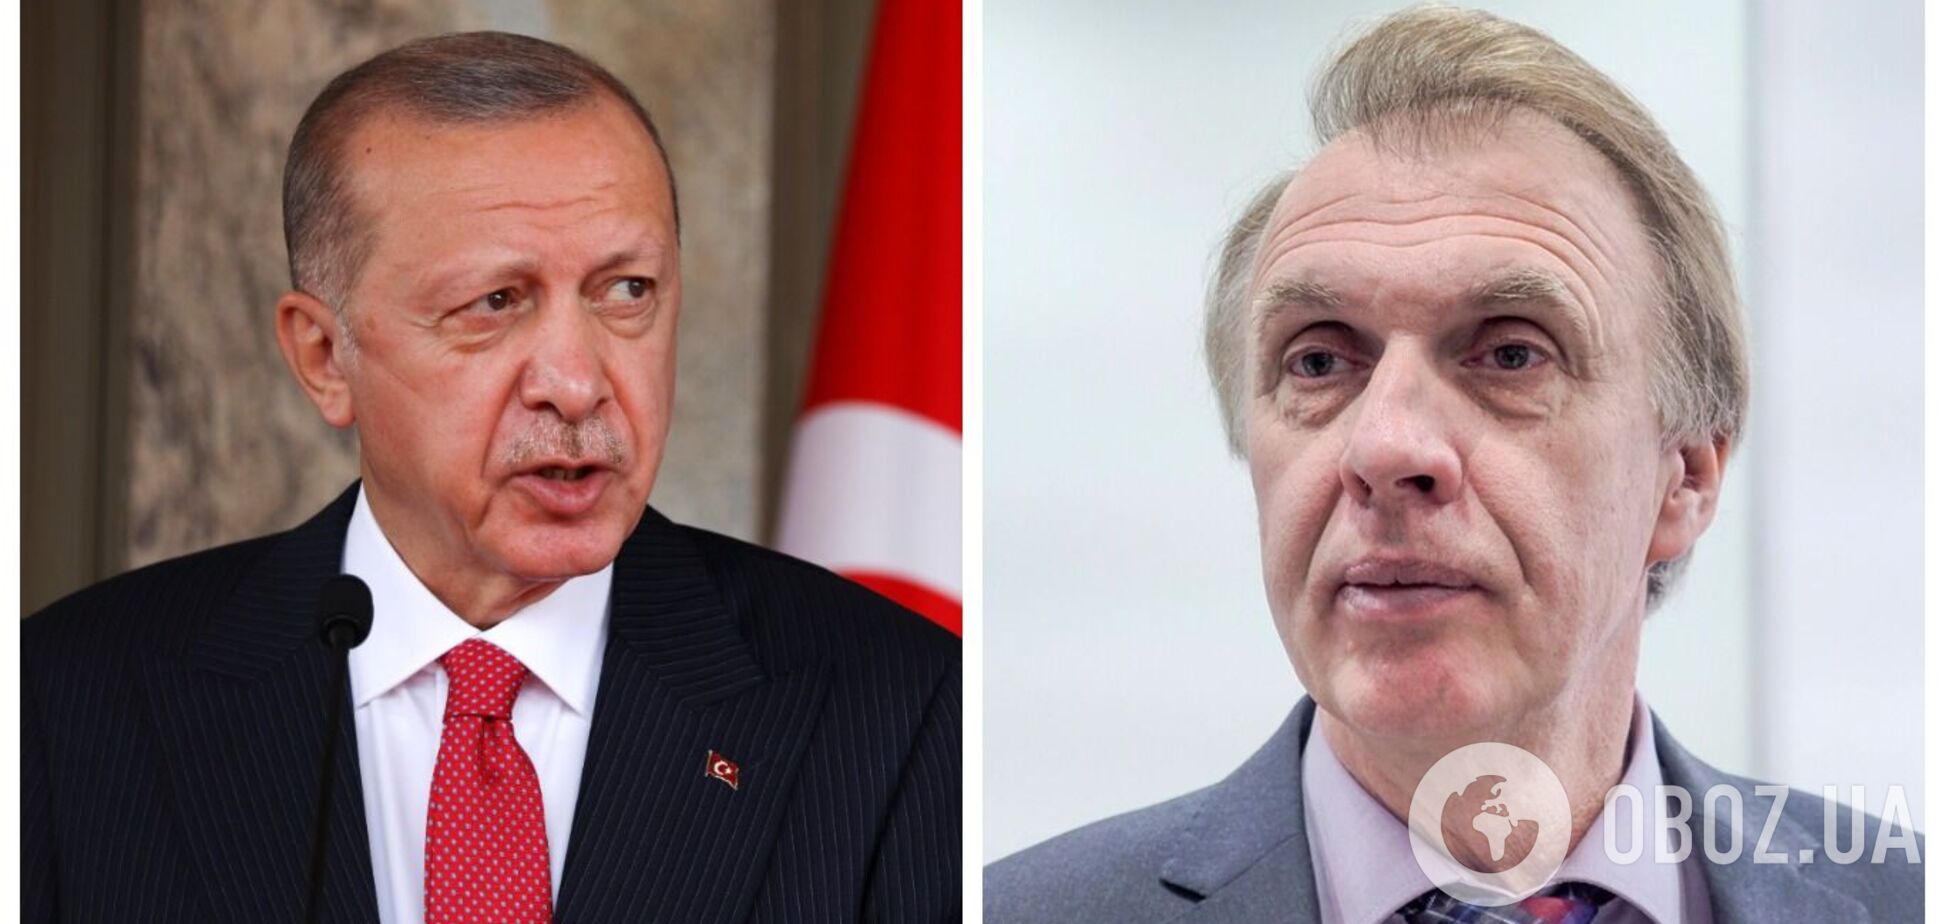 Почему Эрдоган вступился за РФ после ракетного инцидента в Польше: Огрызко объяснил поведение лидера Турции